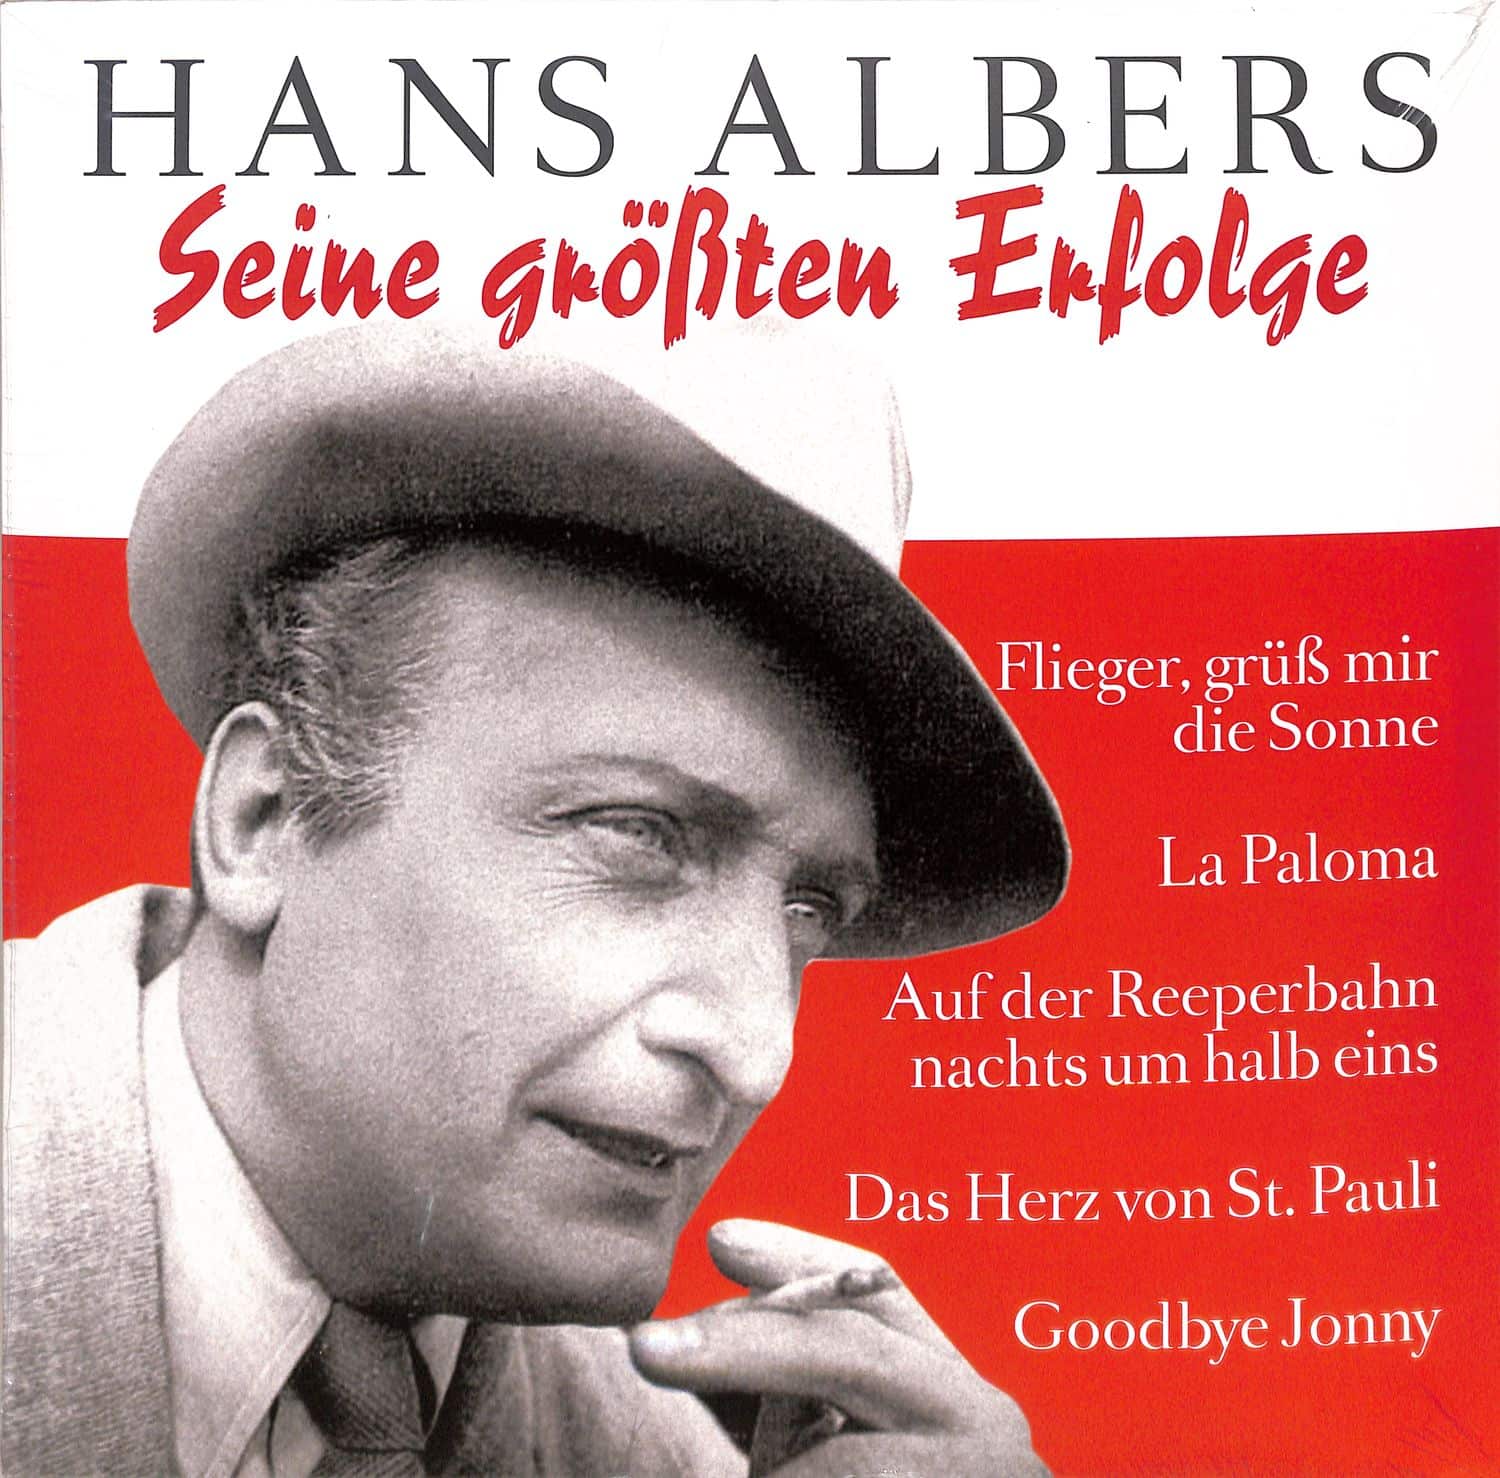 Hans Albers - SEINE GRTEN ERFOLGE 